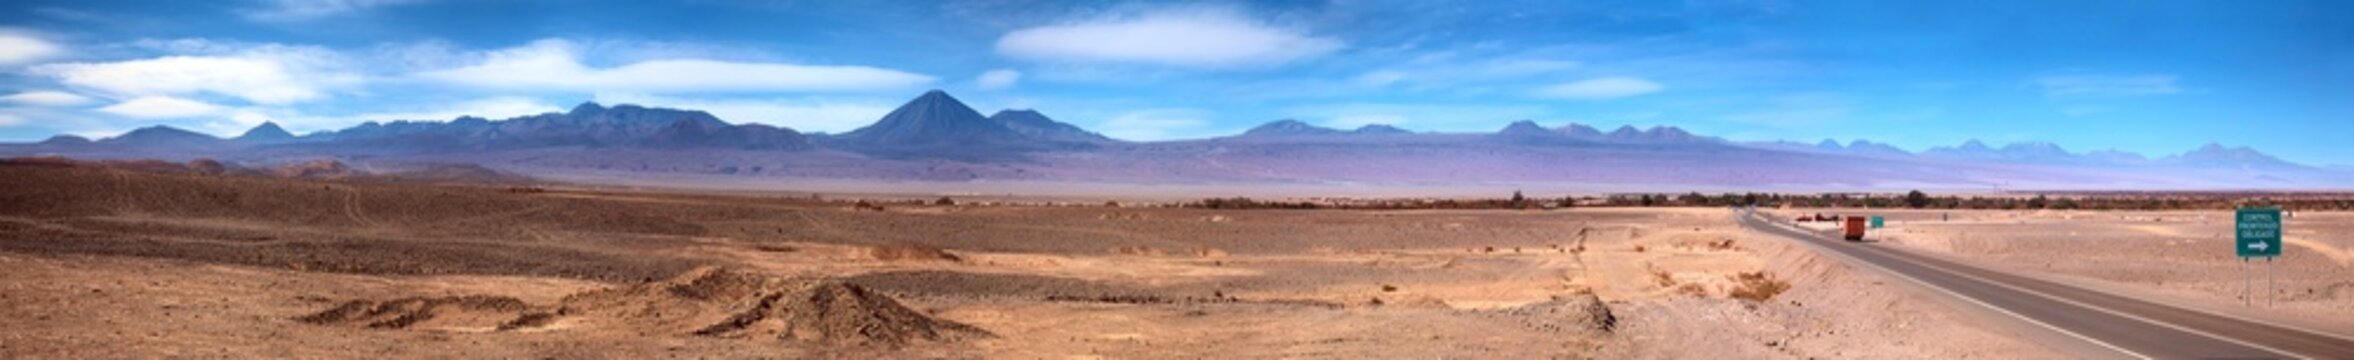 Panoramic view of San Pedro de Atacama, Chile